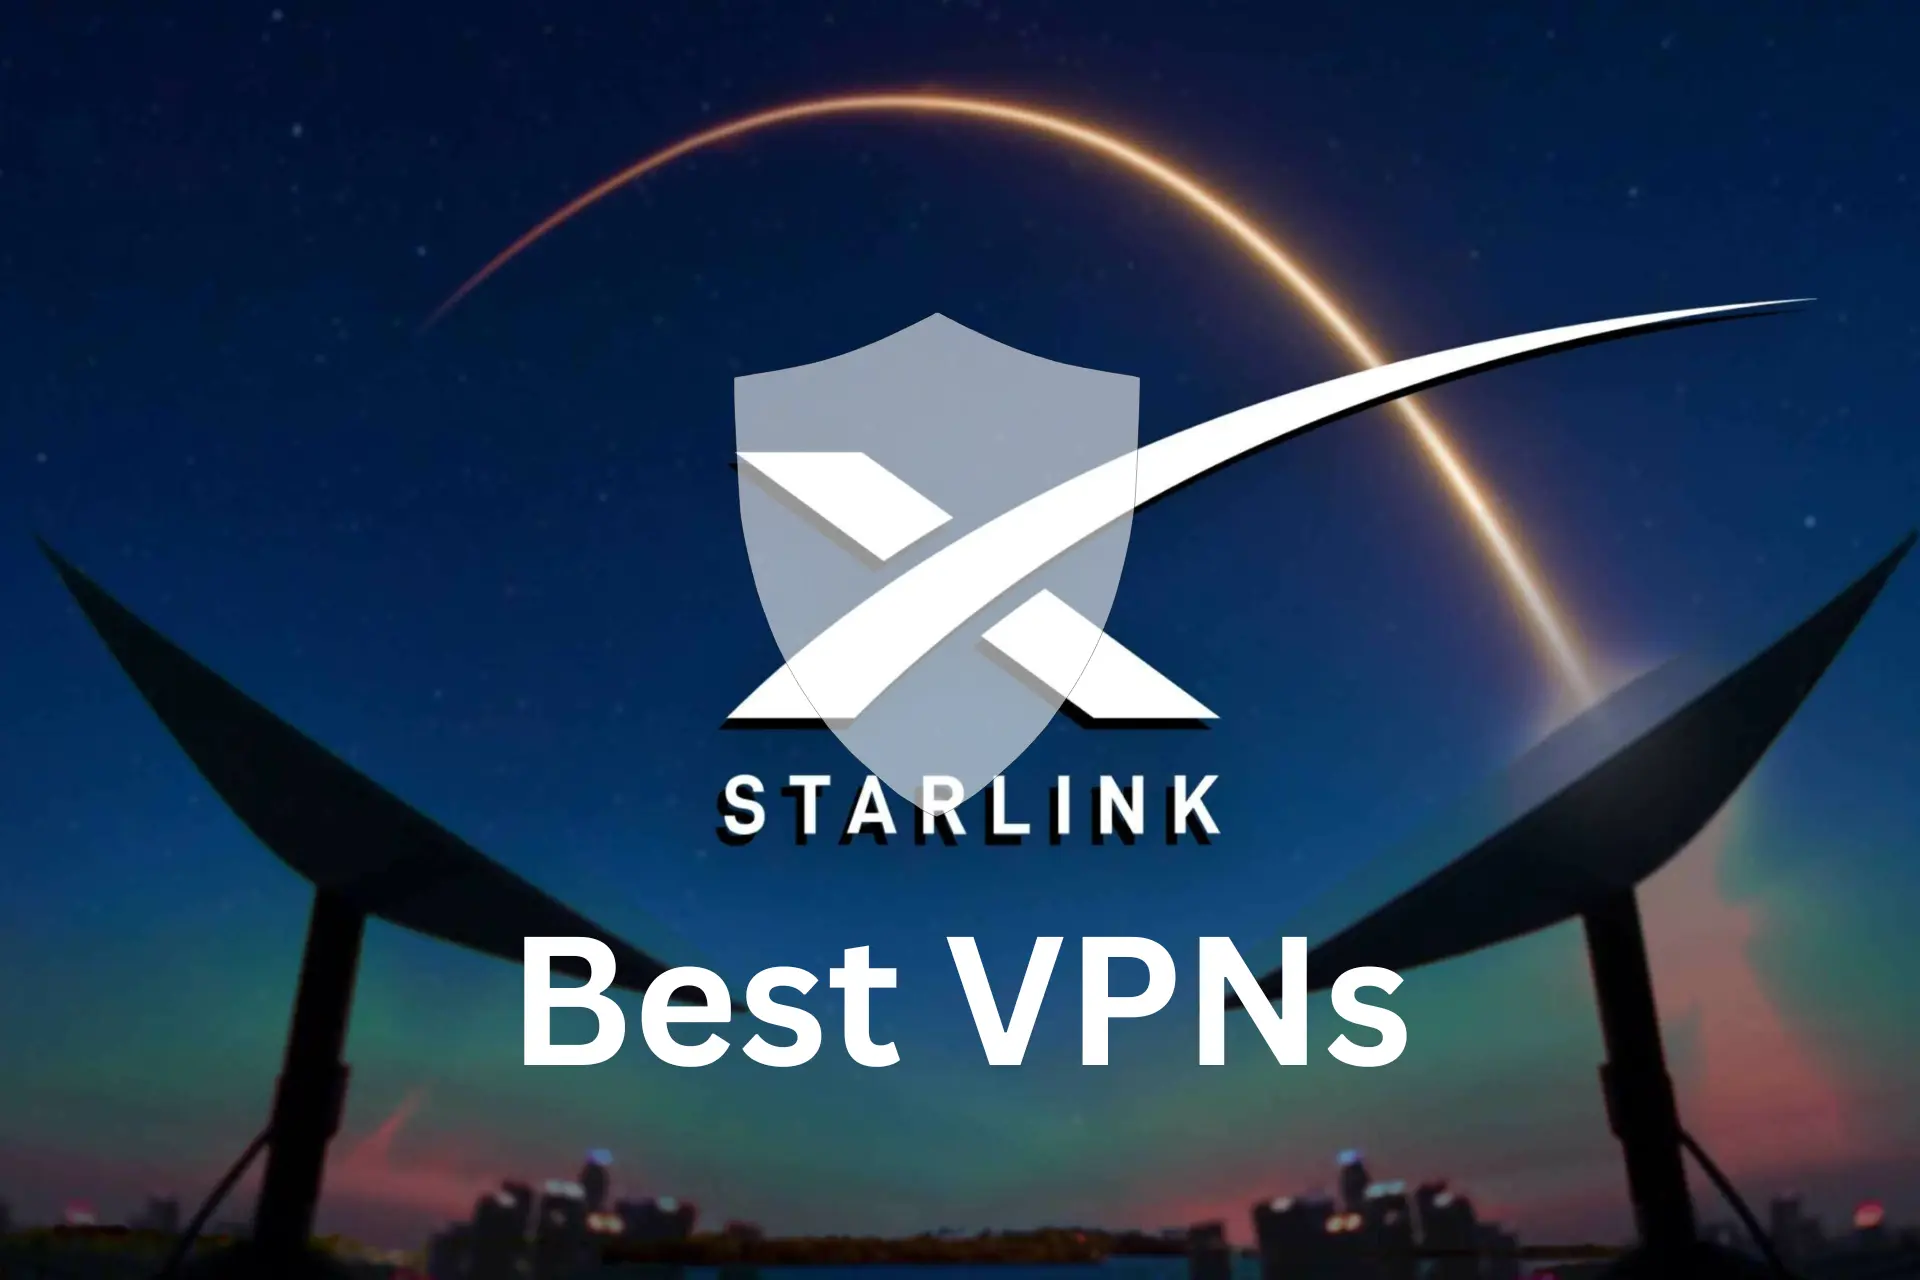 Best VPN starlink